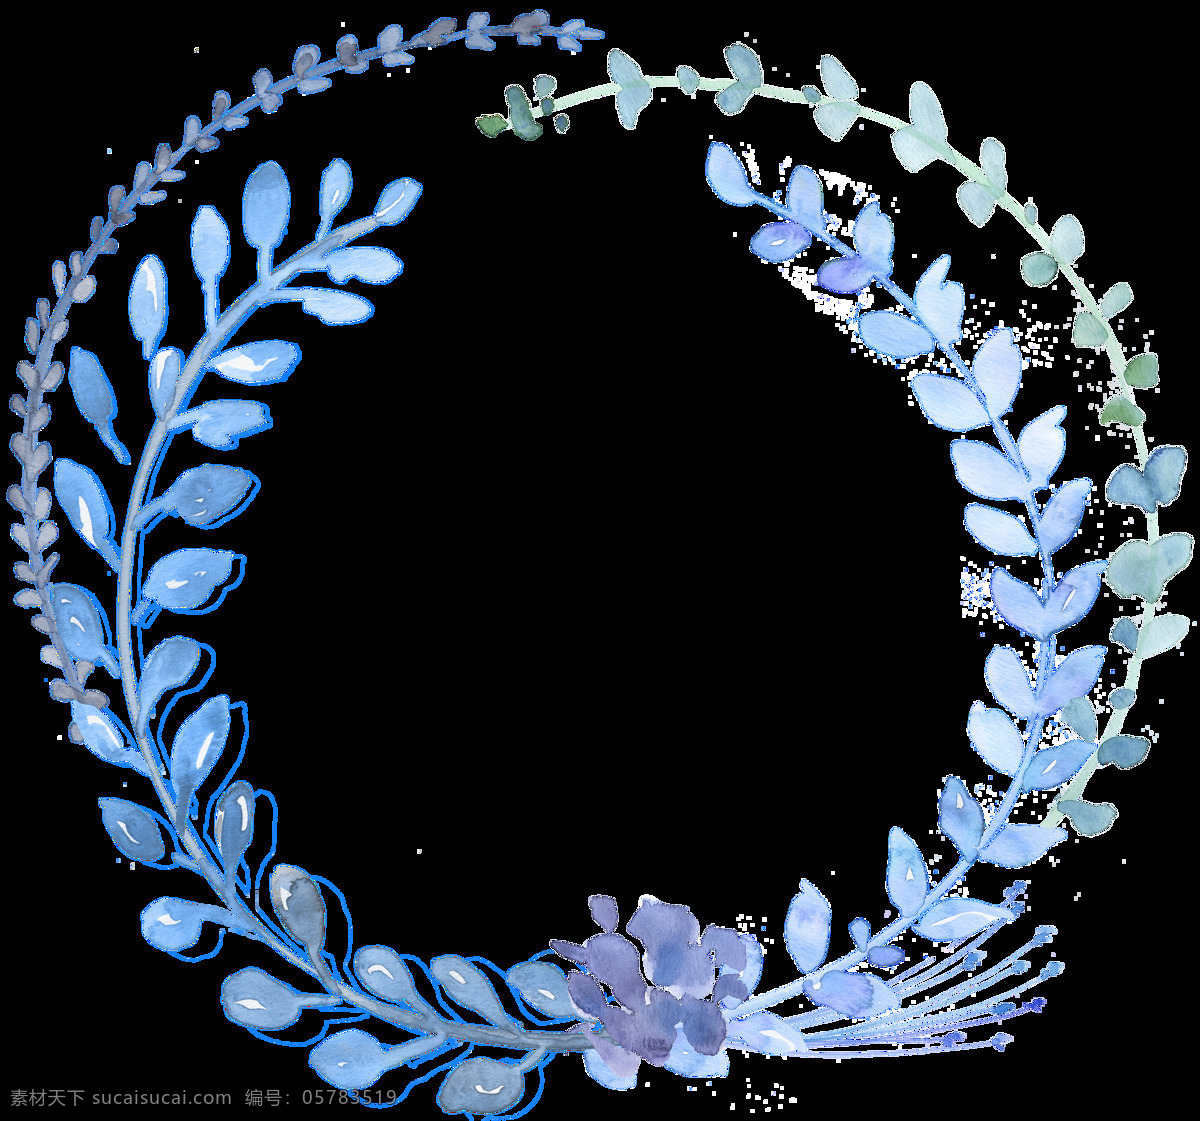 藤蔓 植物 卡通 透明 水彩 抠图专用 装饰 设计素材